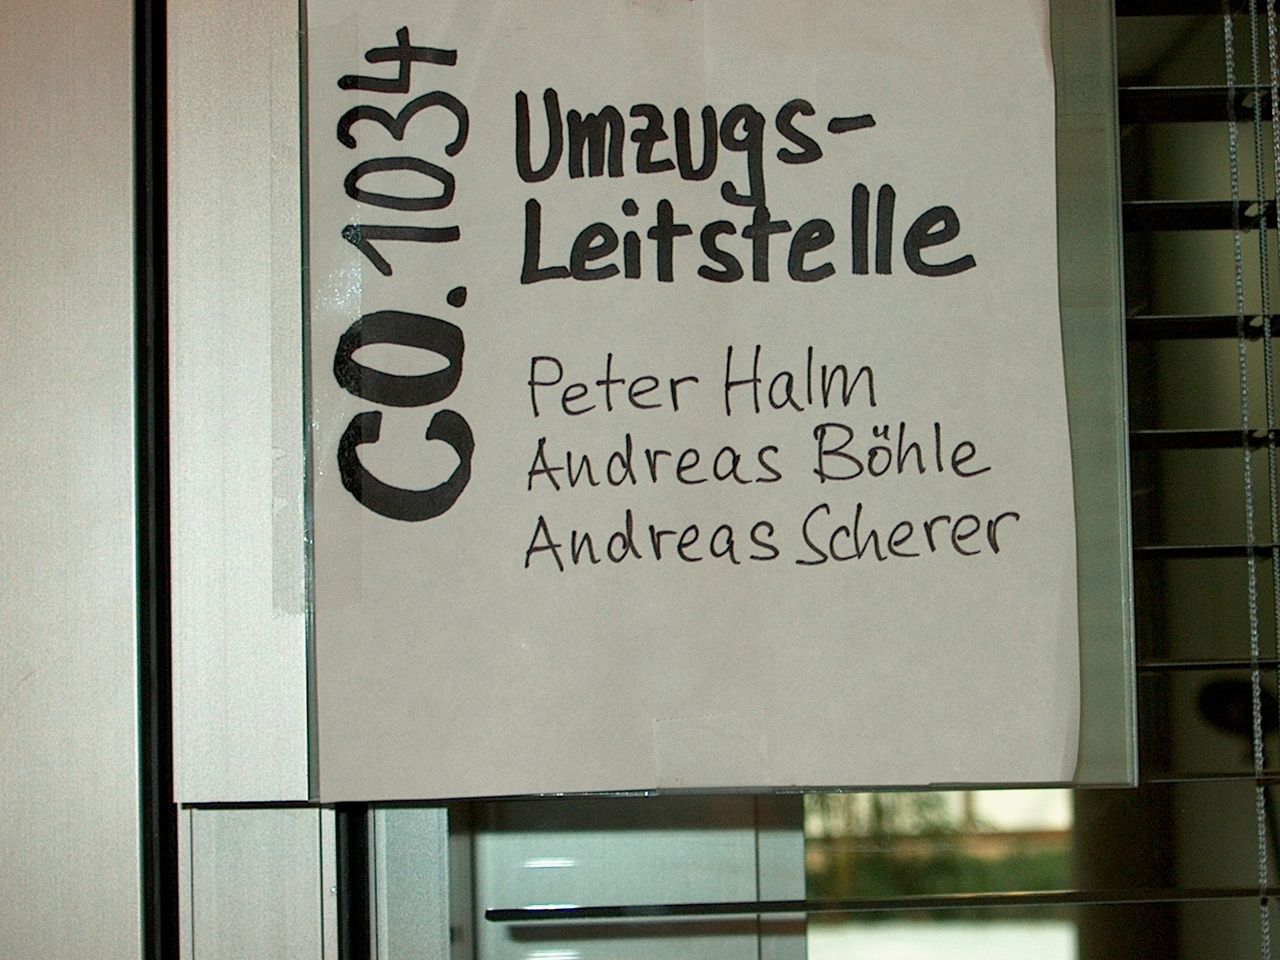 Ein Plakat, welches auf eine Umzugsleitstelle unter der Führunf von Andreas Scherer hinweist.